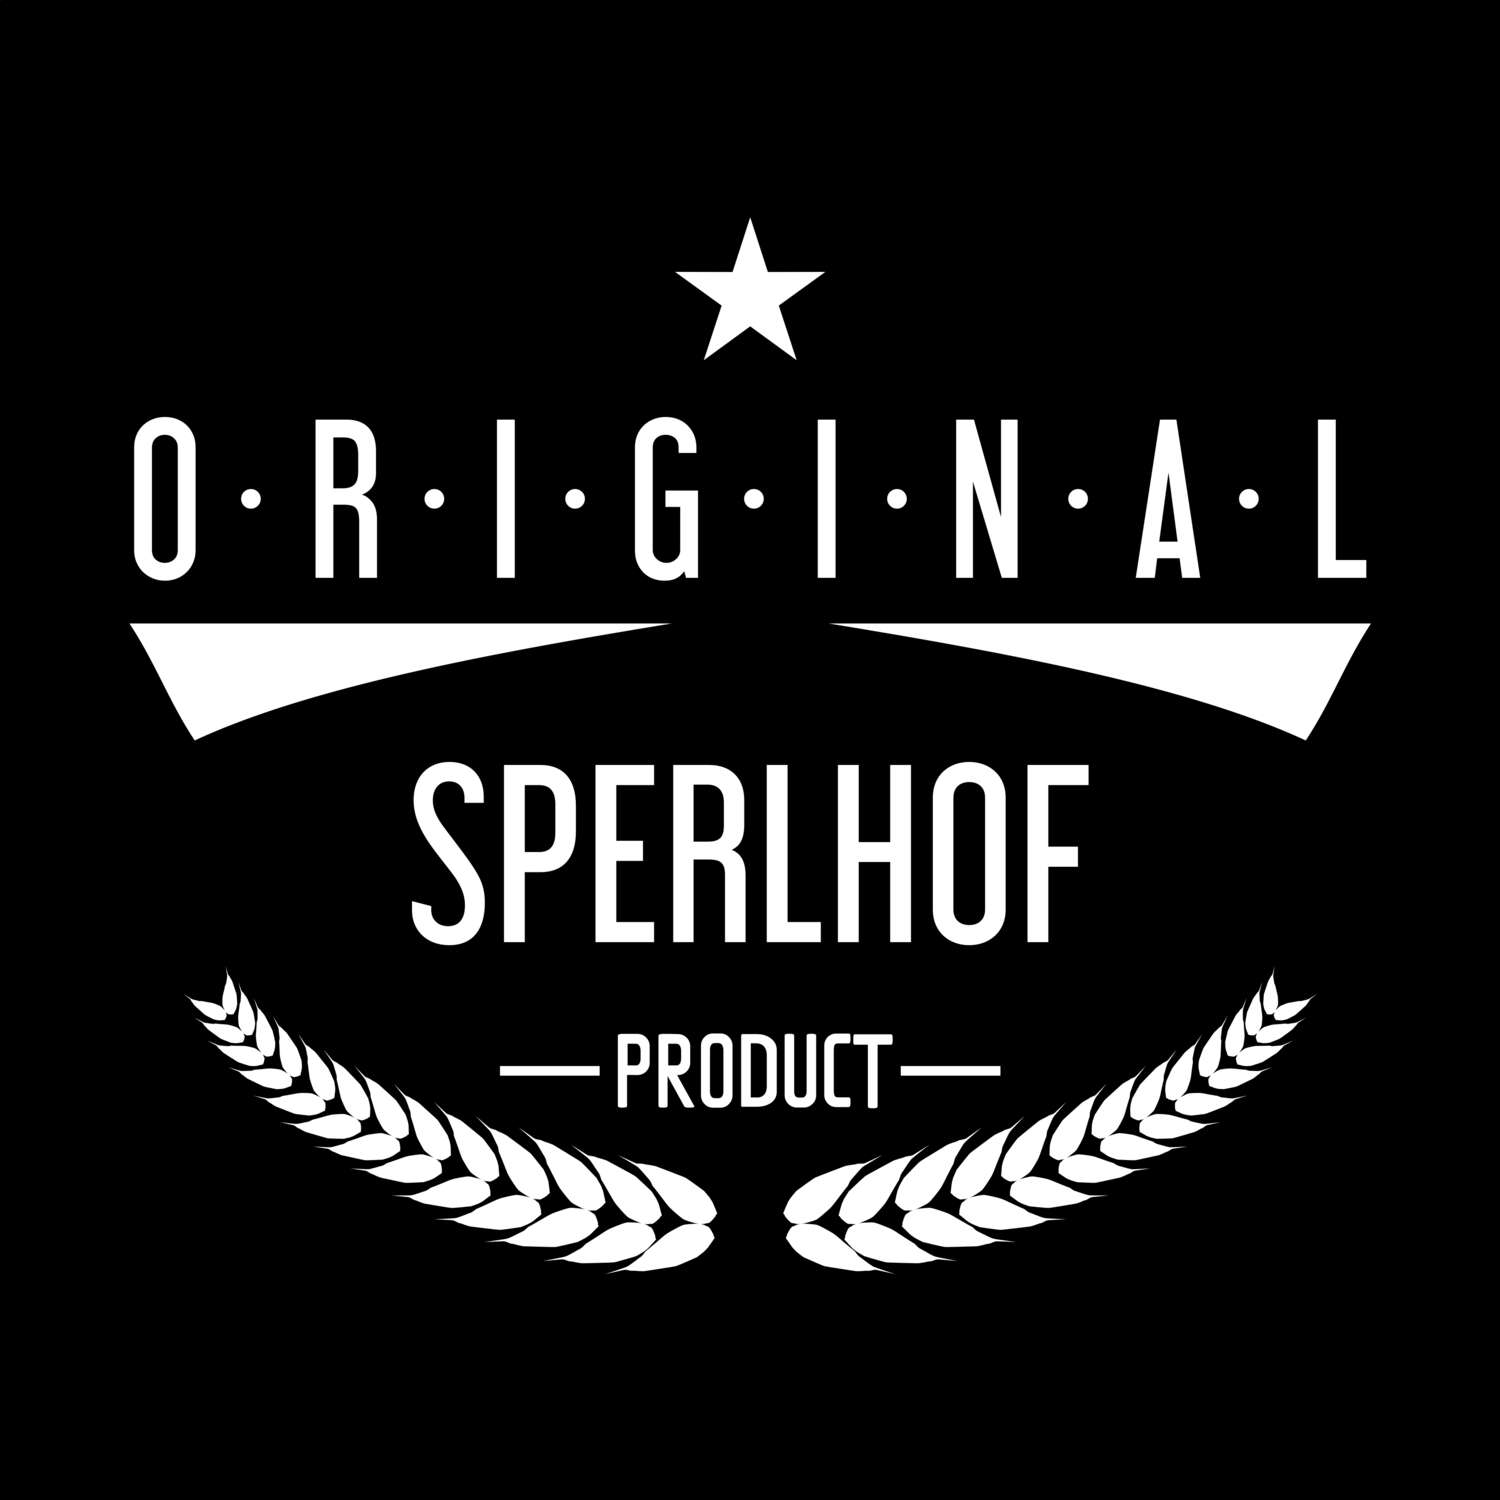 Sperlhof T-Shirt »Original Product«